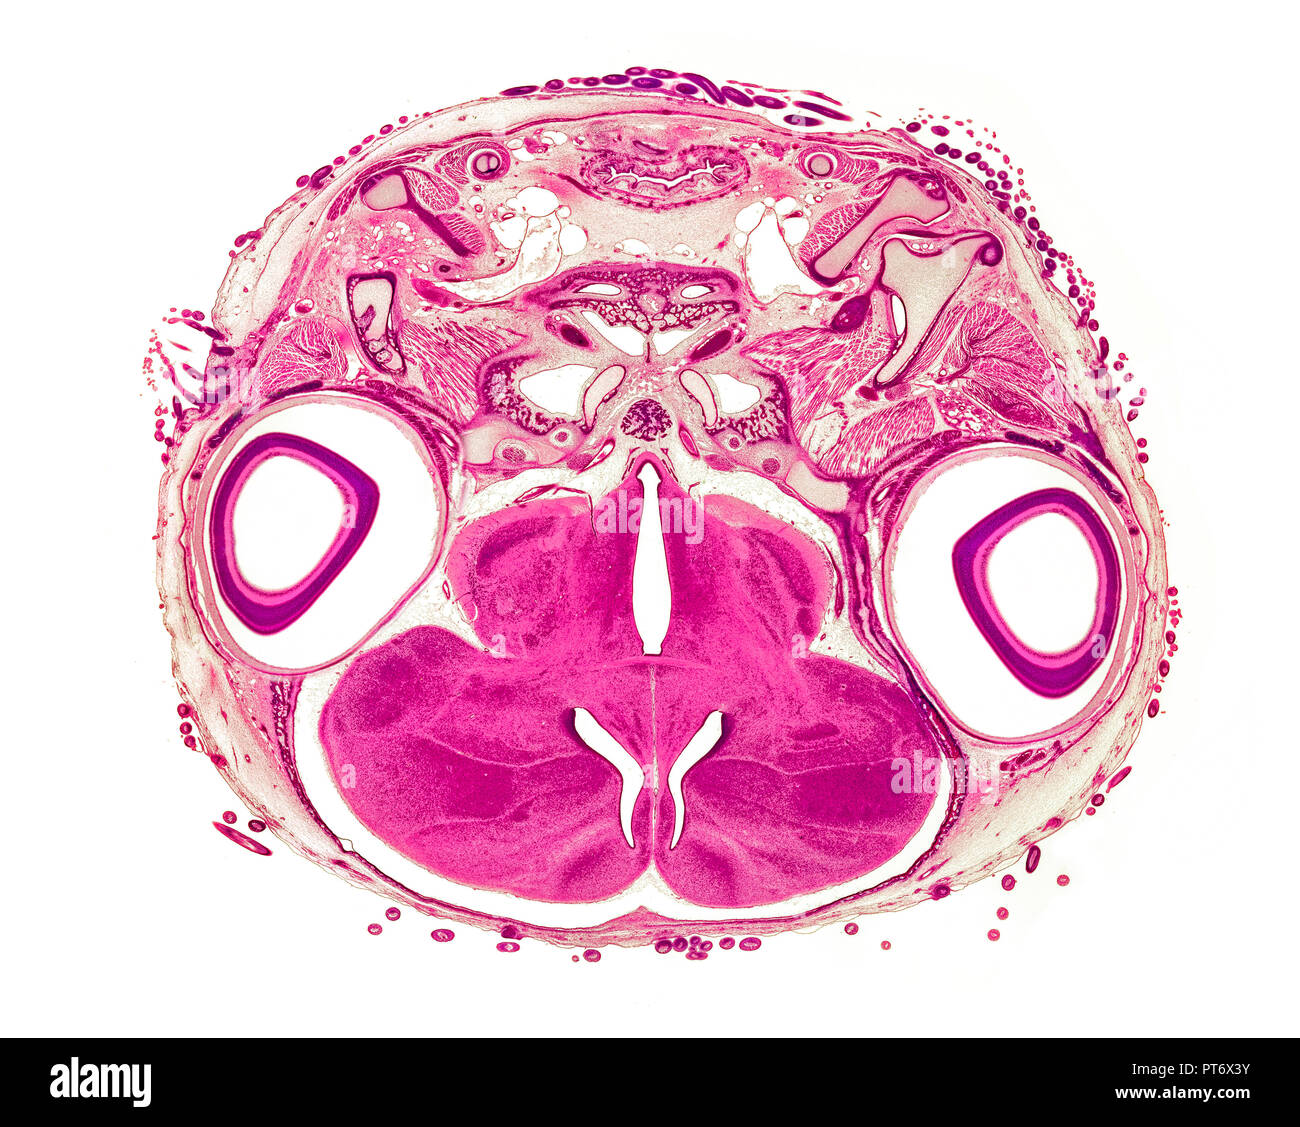 Embrione di pulcino 17 giorni XS della sezione di testa, fotomicrografia in campo chiaro Foto Stock